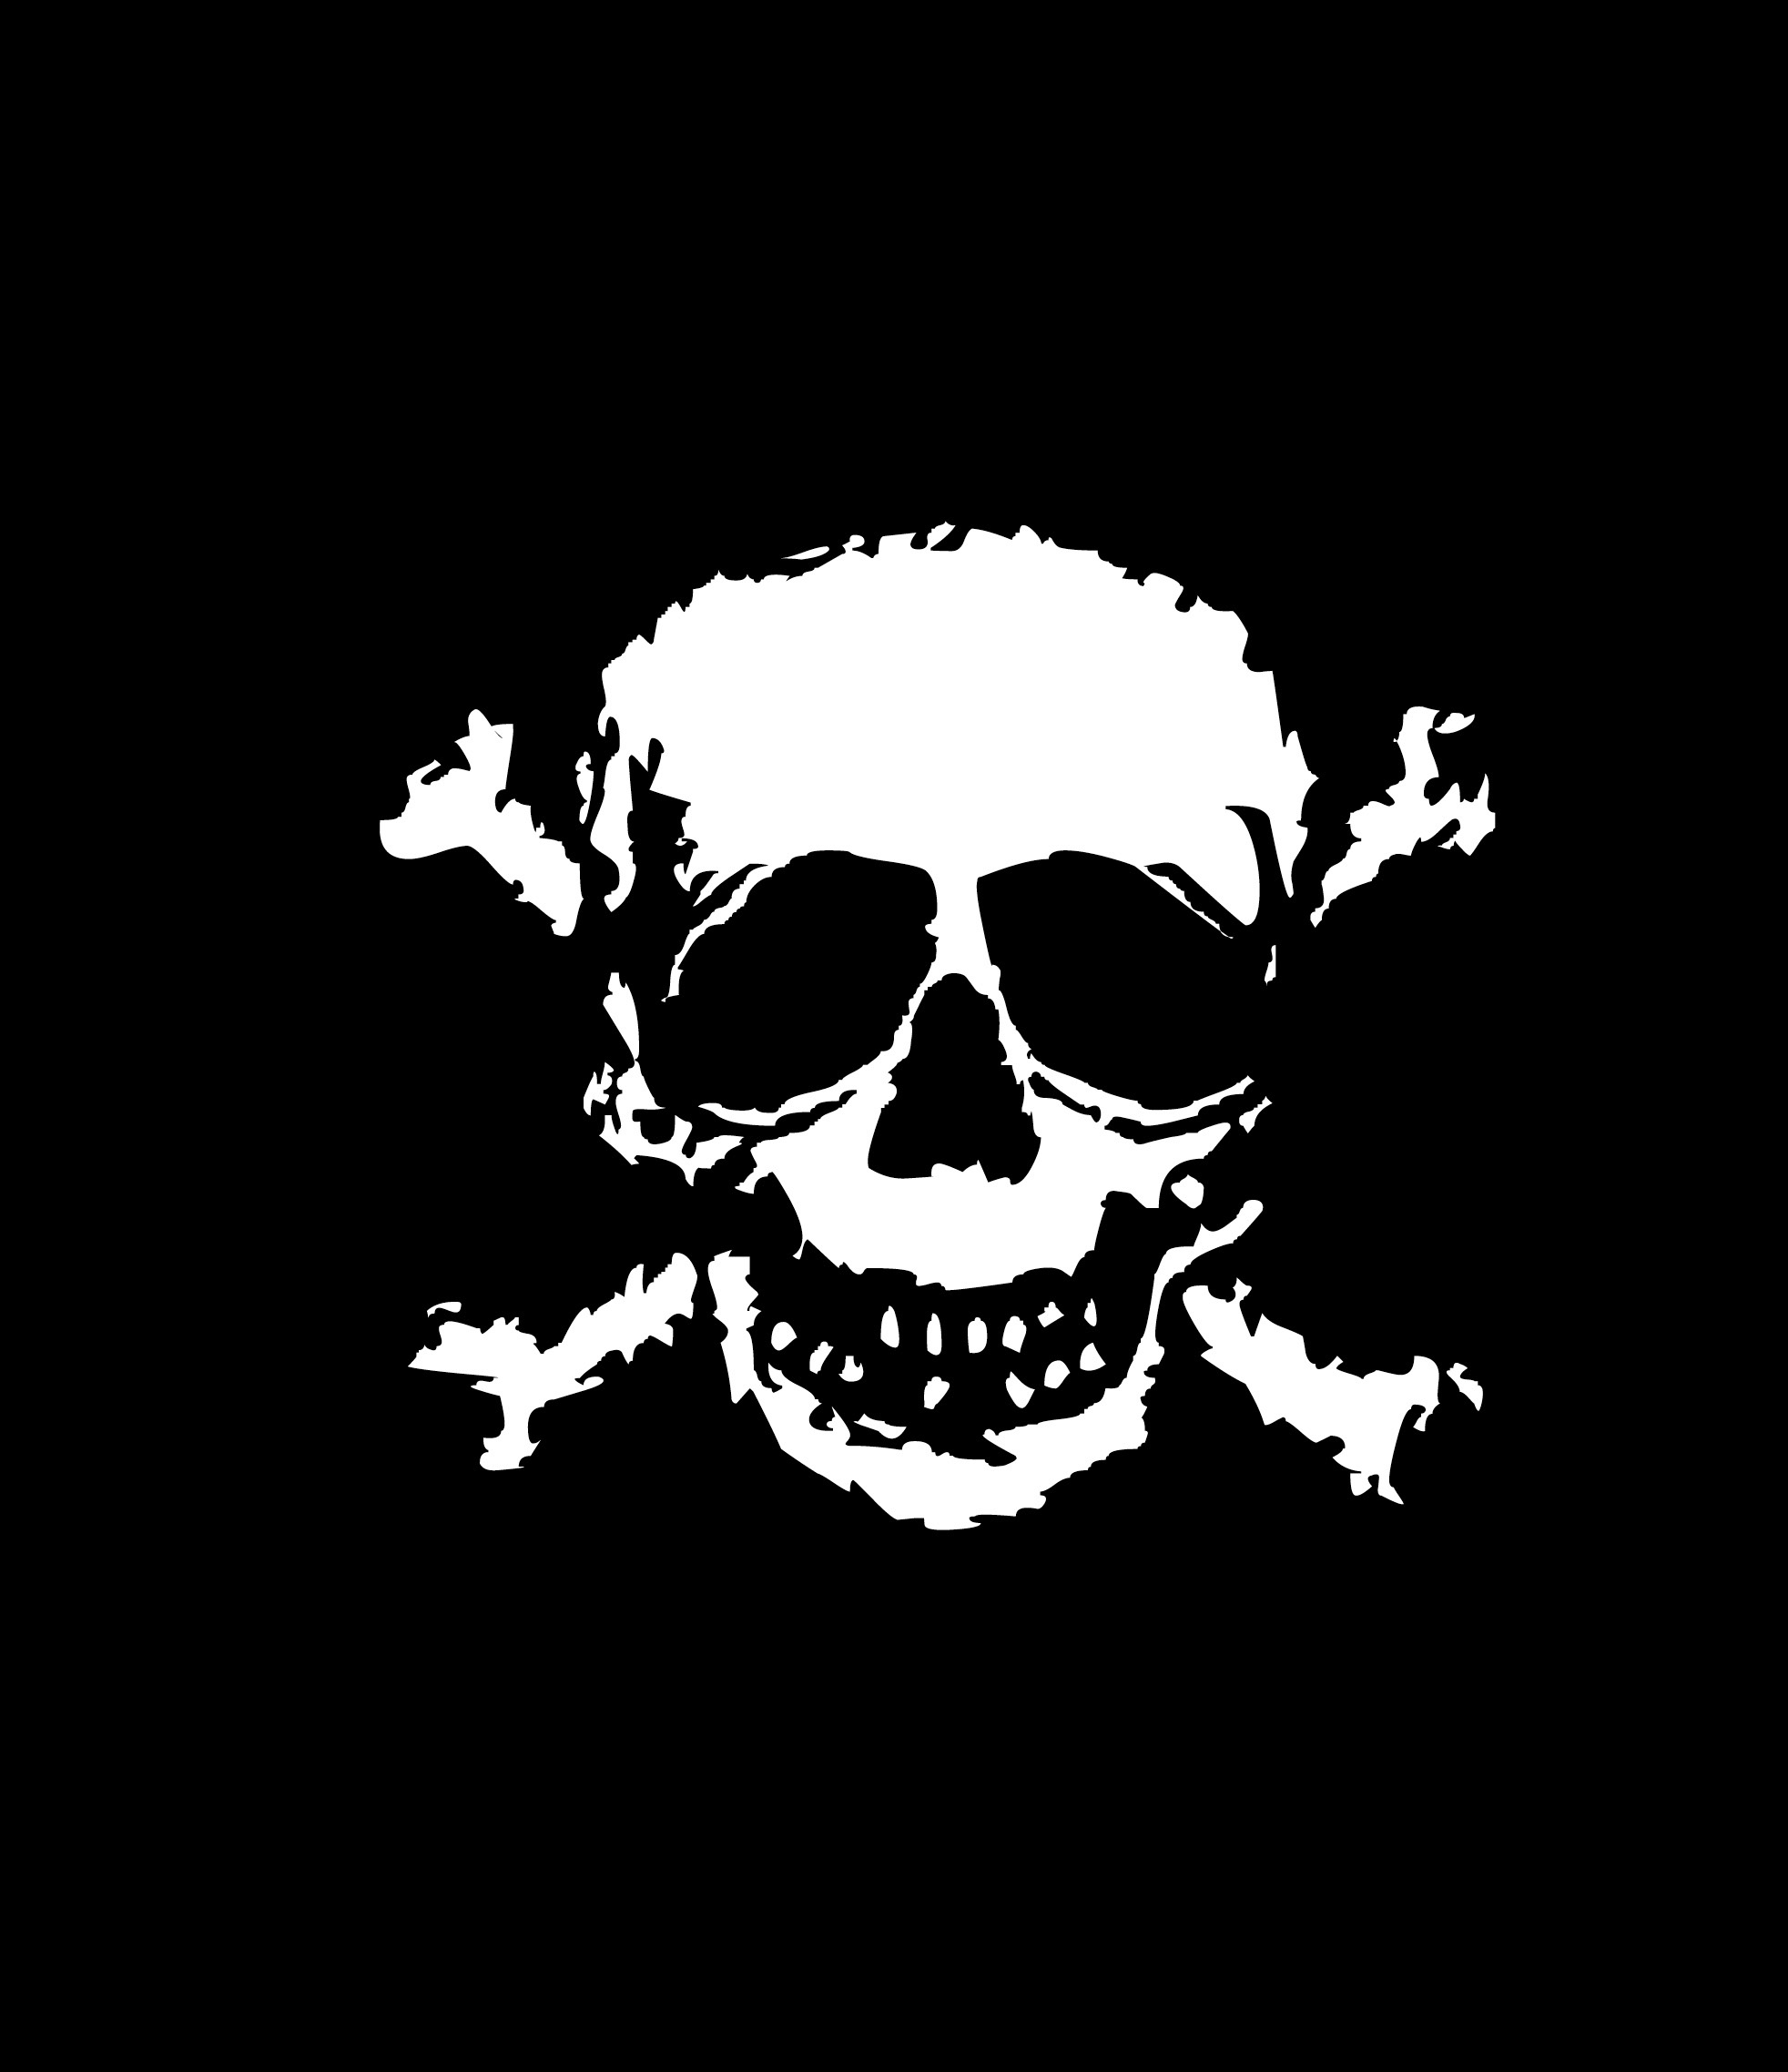 Crossed Bones Keywords Pirate Skull And Crossed Bones Halloween Creepy